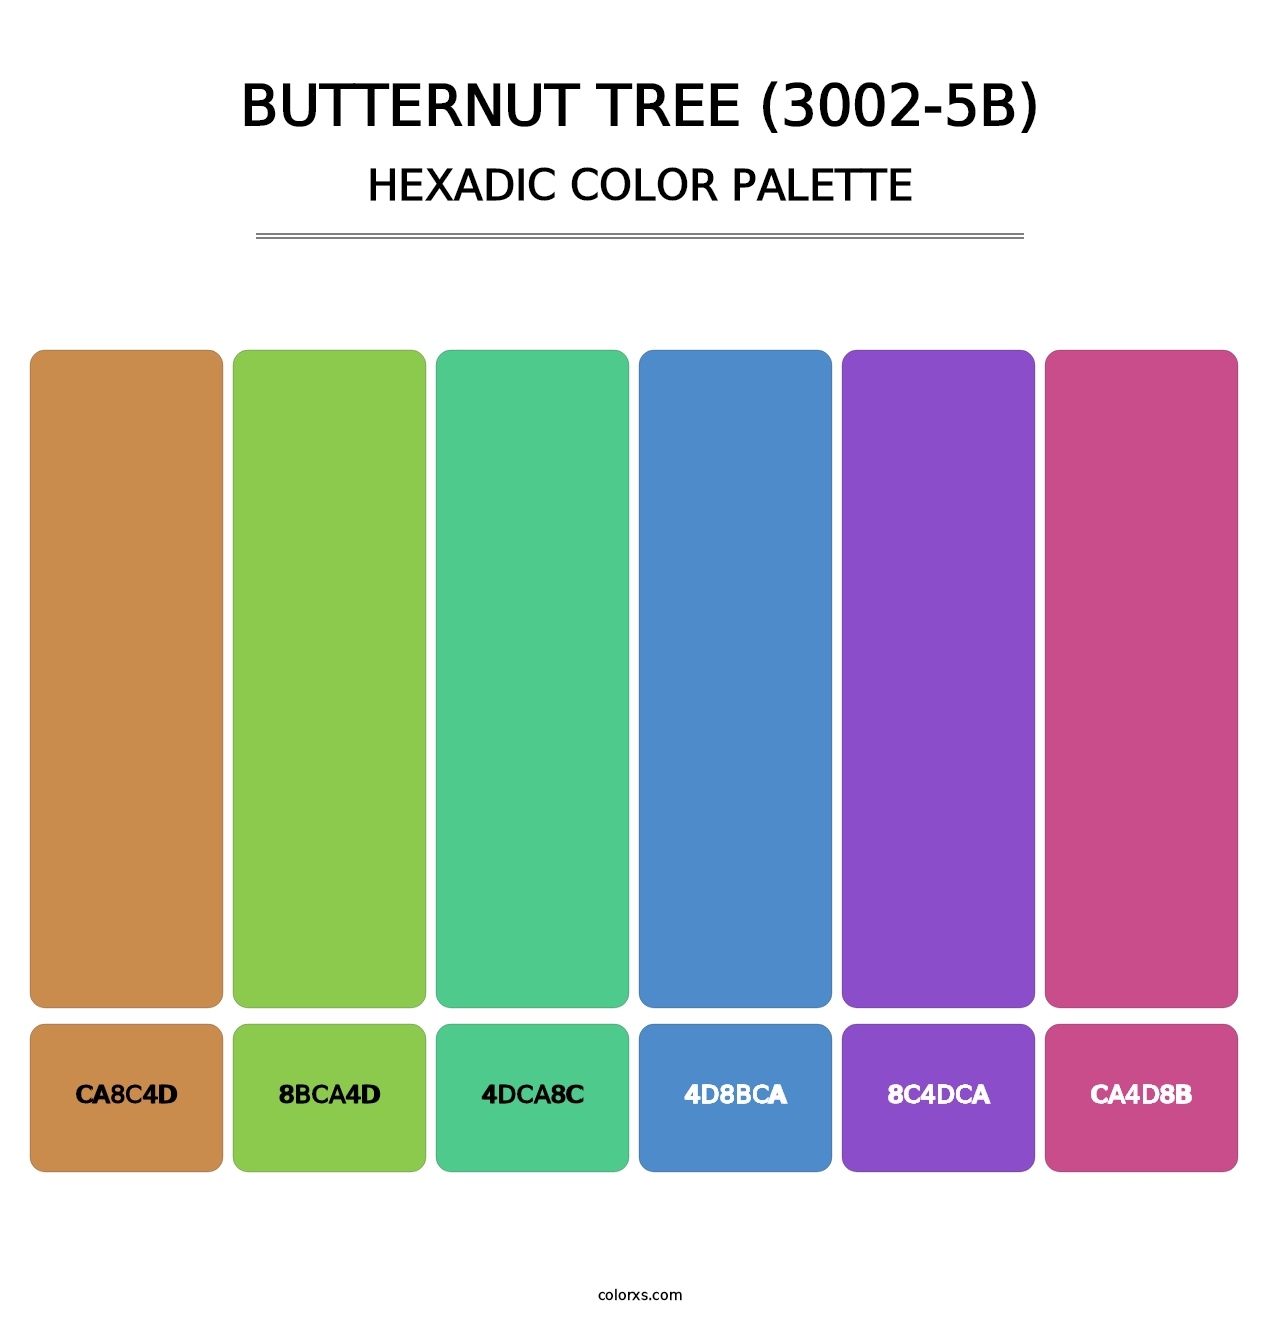 Butternut Tree (3002-5B) - Hexadic Color Palette